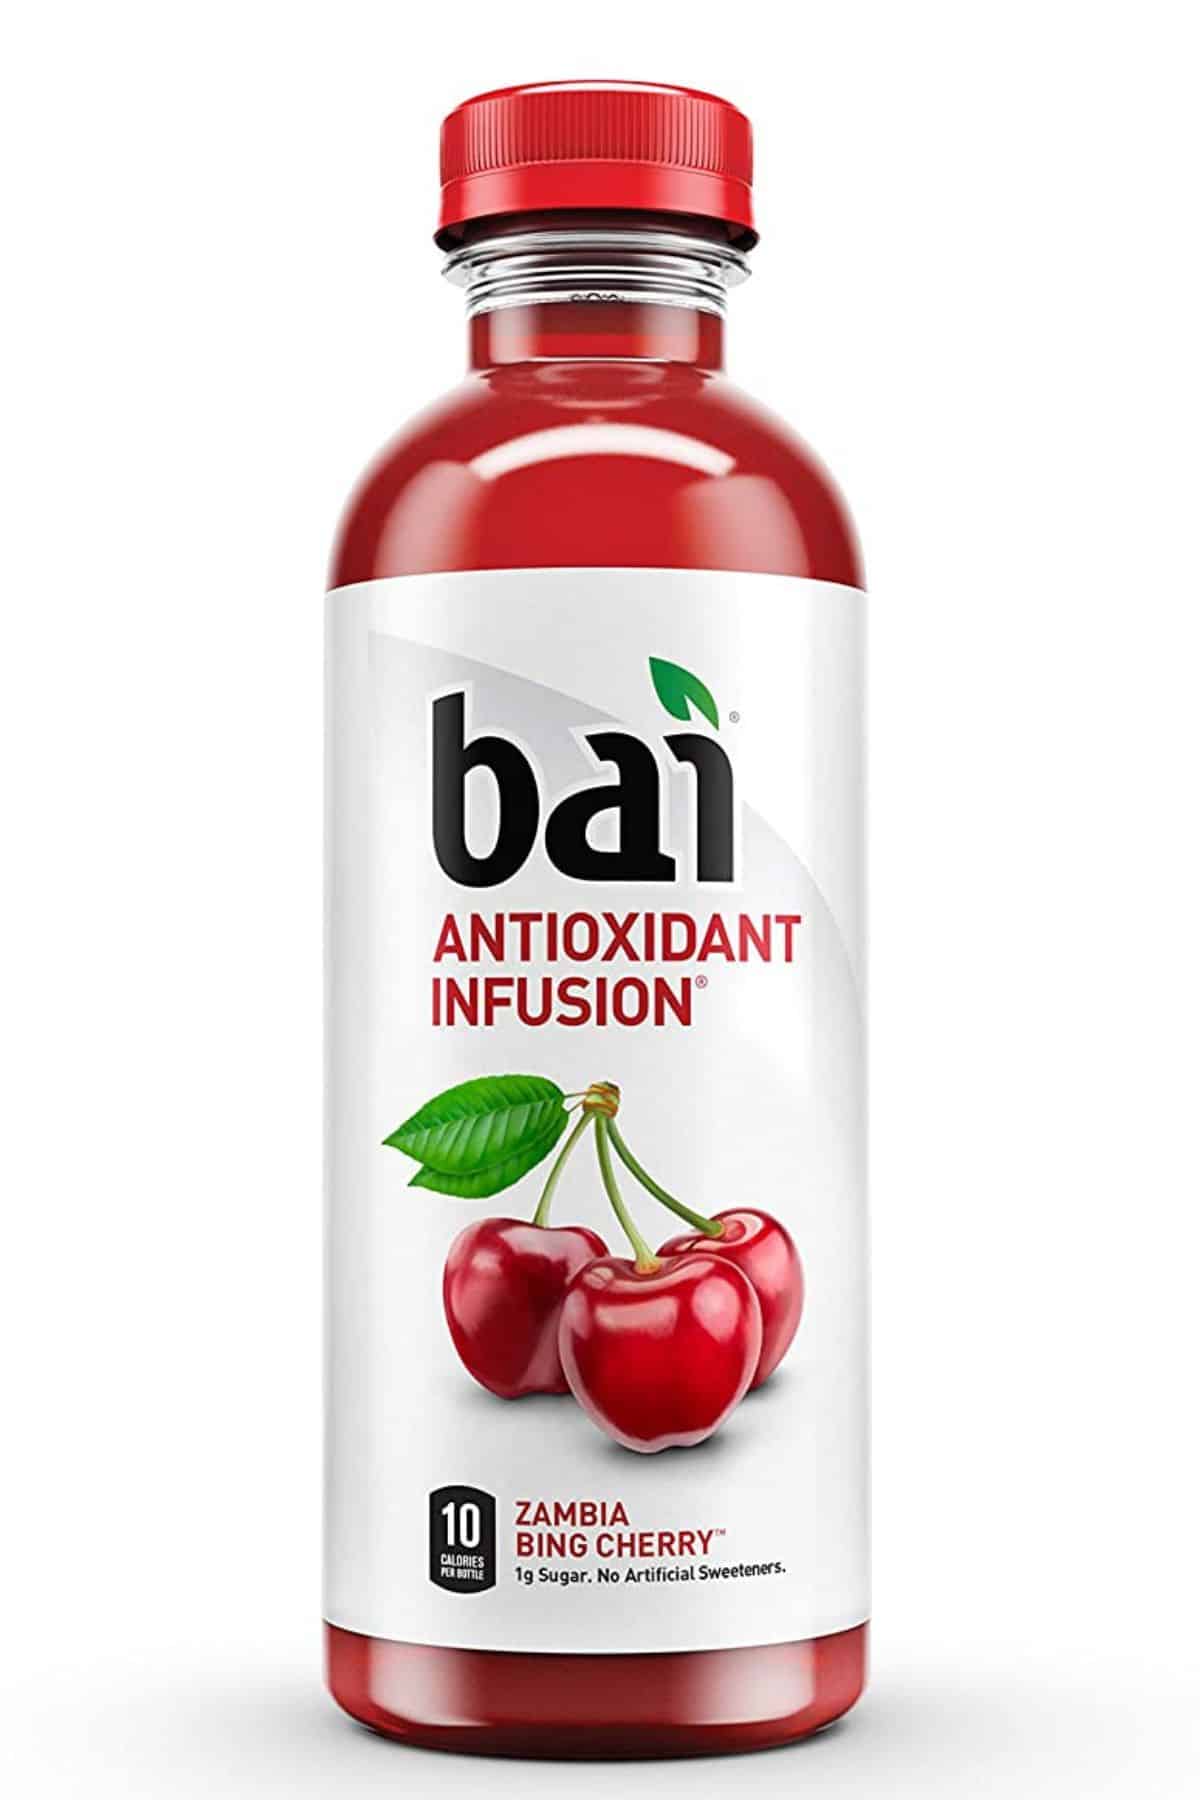 a bottle of Bai water in Zambia Bing Cherry flavor.